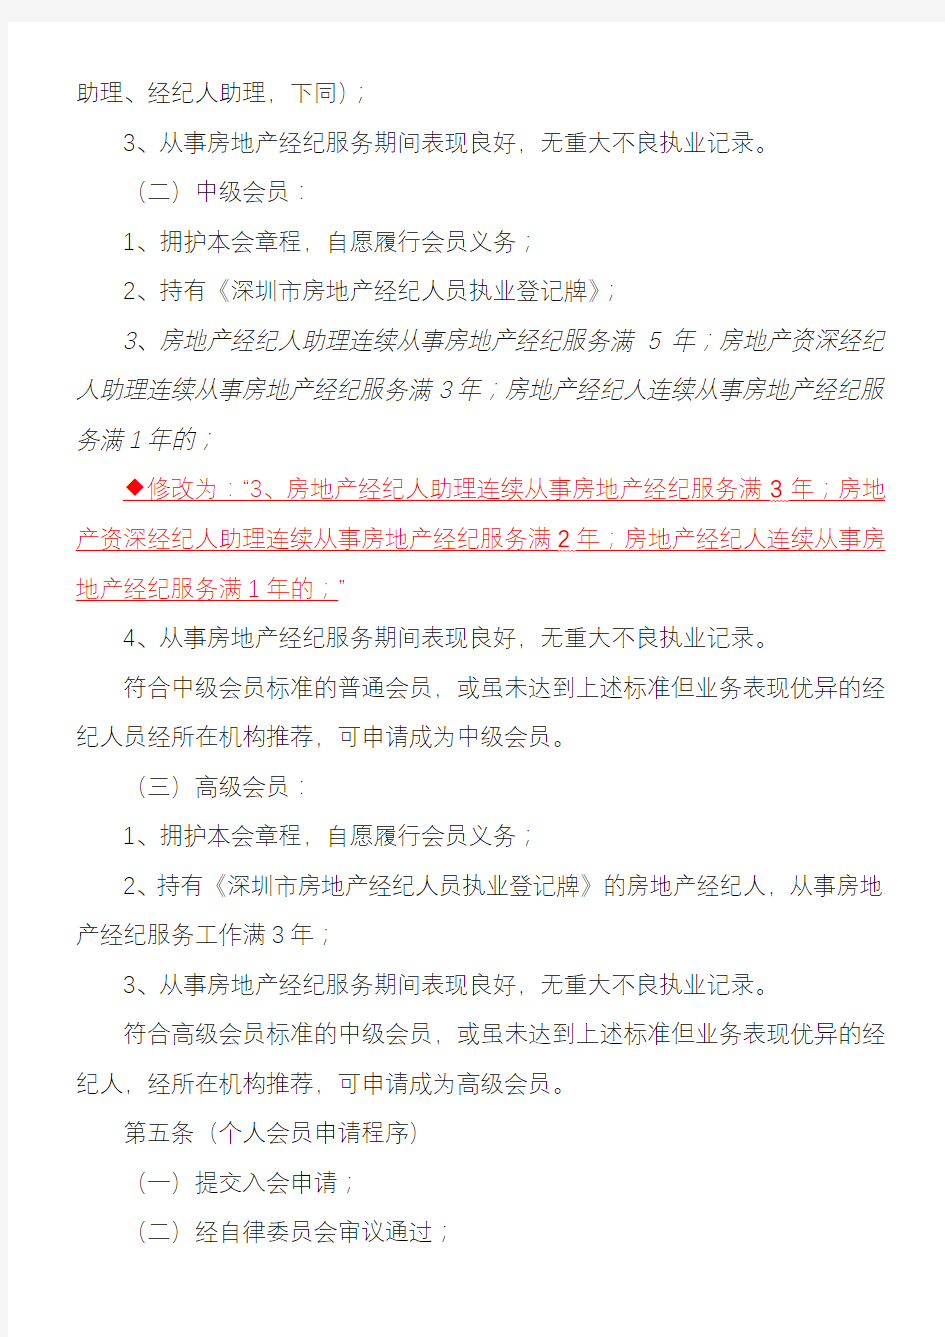 深圳市房地产经纪行业协会个人会员管理办法